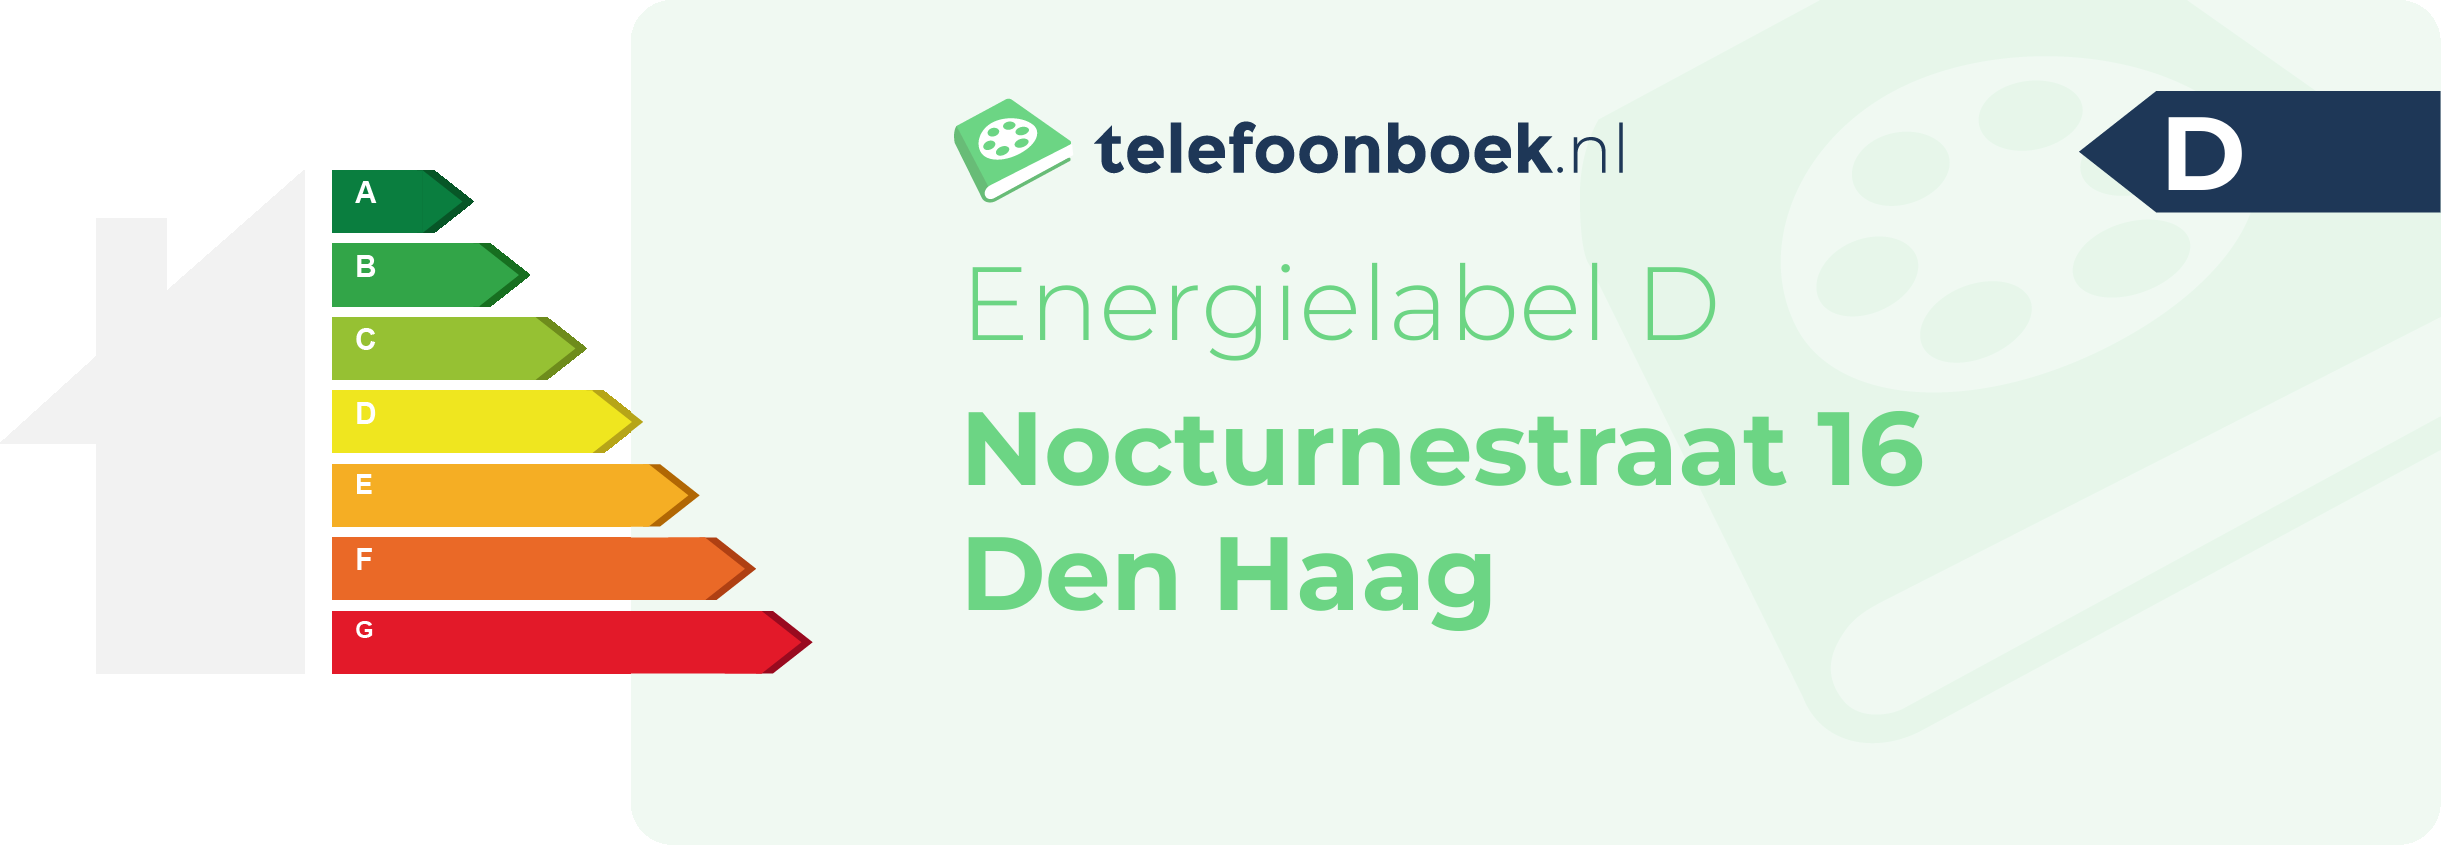 Energielabel Nocturnestraat 16 Den Haag